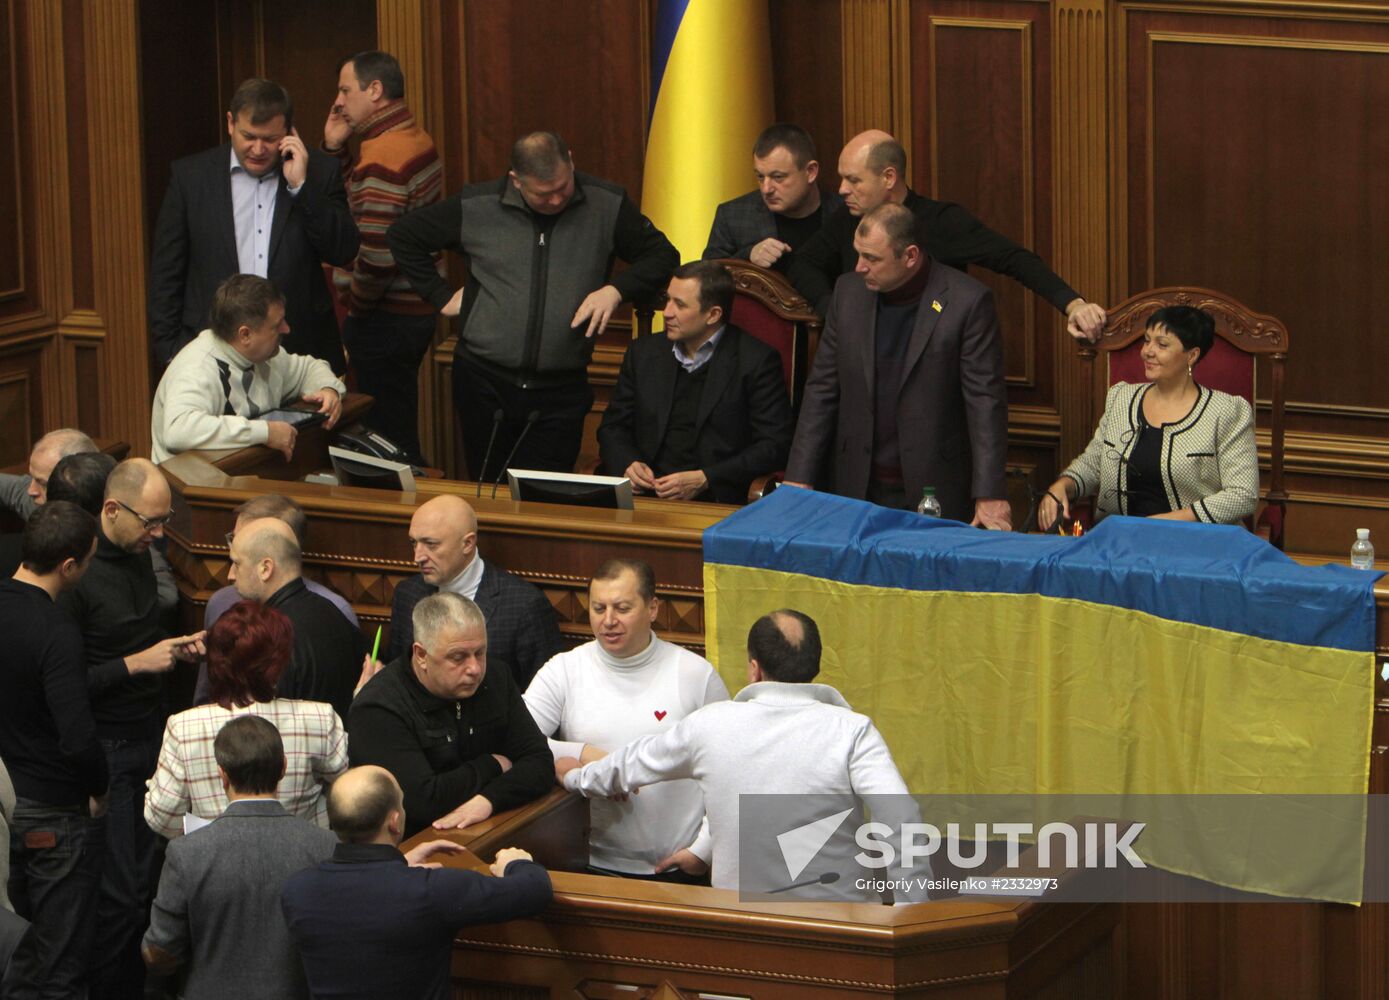 Verkhovna Rada of Ukraine blocked the opposition